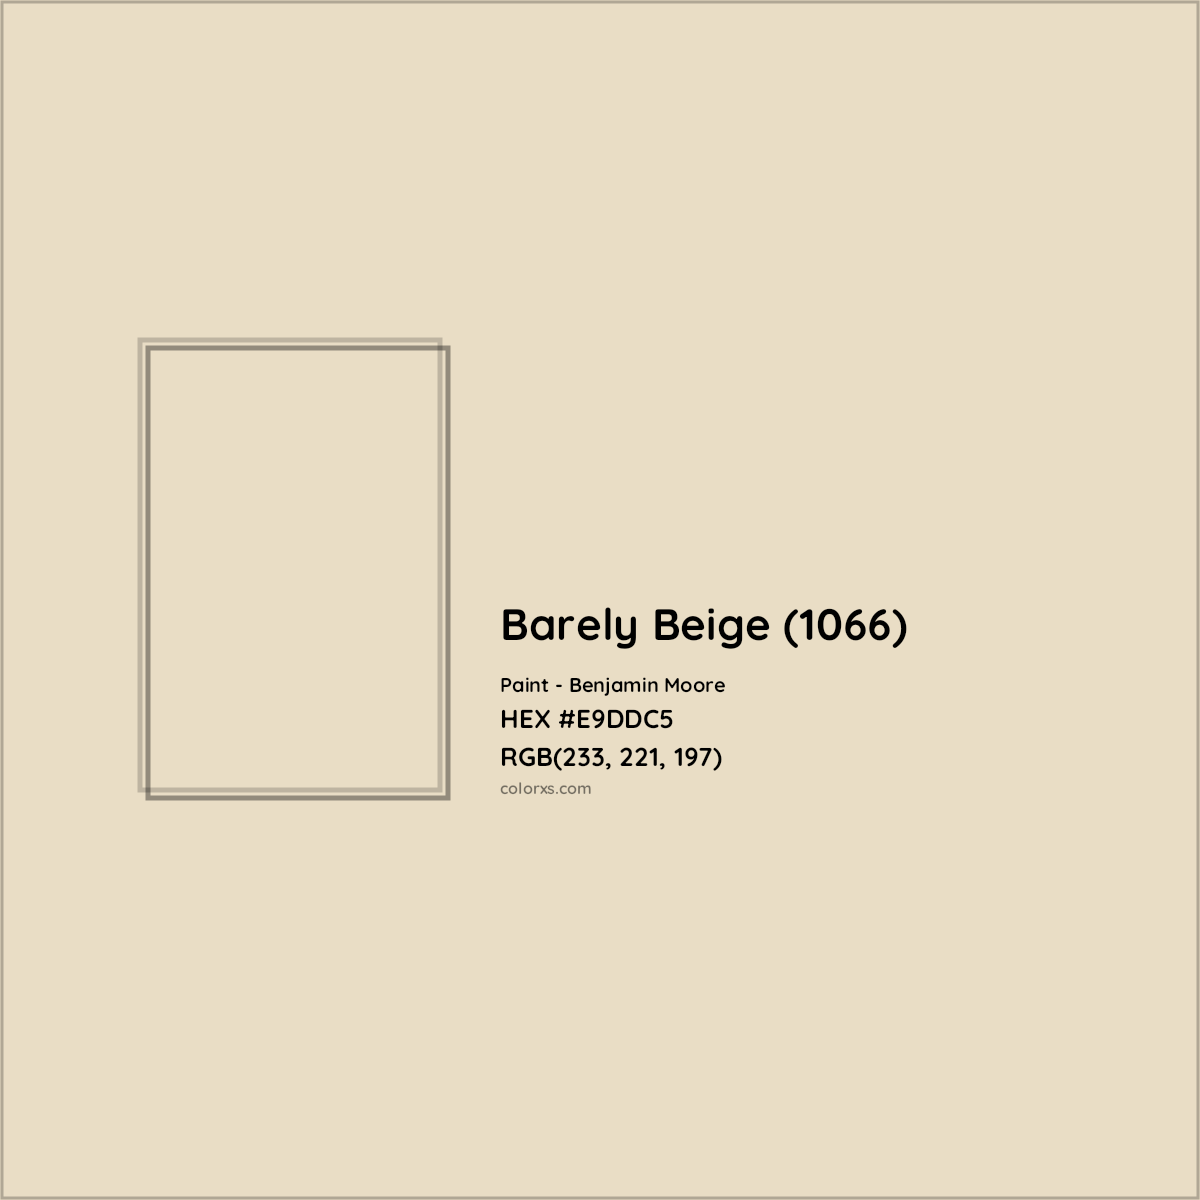 Barely Beige 1066 by Benjamin Moore